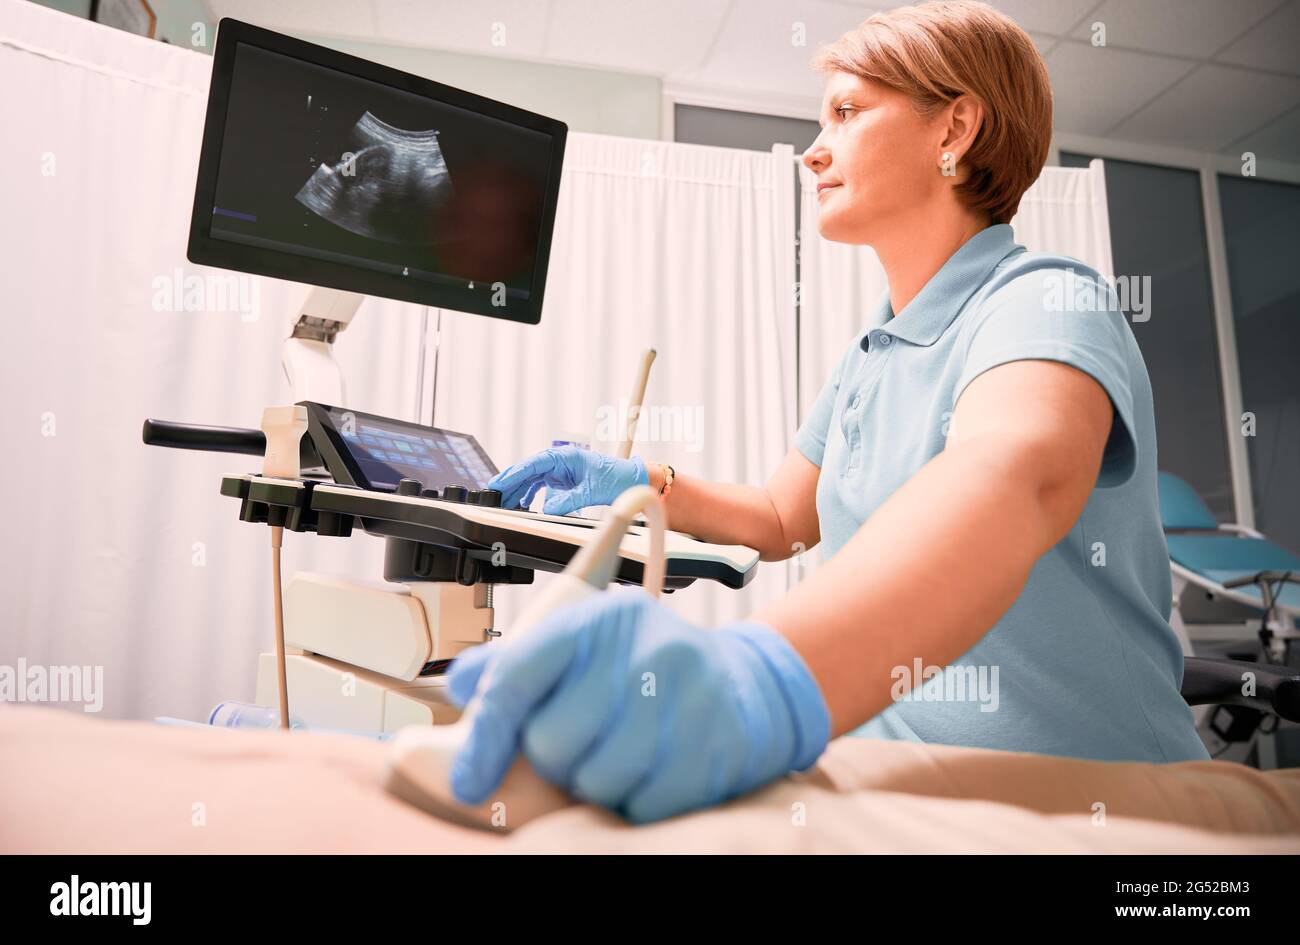 Donna ecografa che esamina donna con ecografo. Il medico sposta il trasduttore a ultrasuoni sull'addome del paziente mentre guarda il display. Concetto di esame medico e diagnostica ecografica. Foto Stock